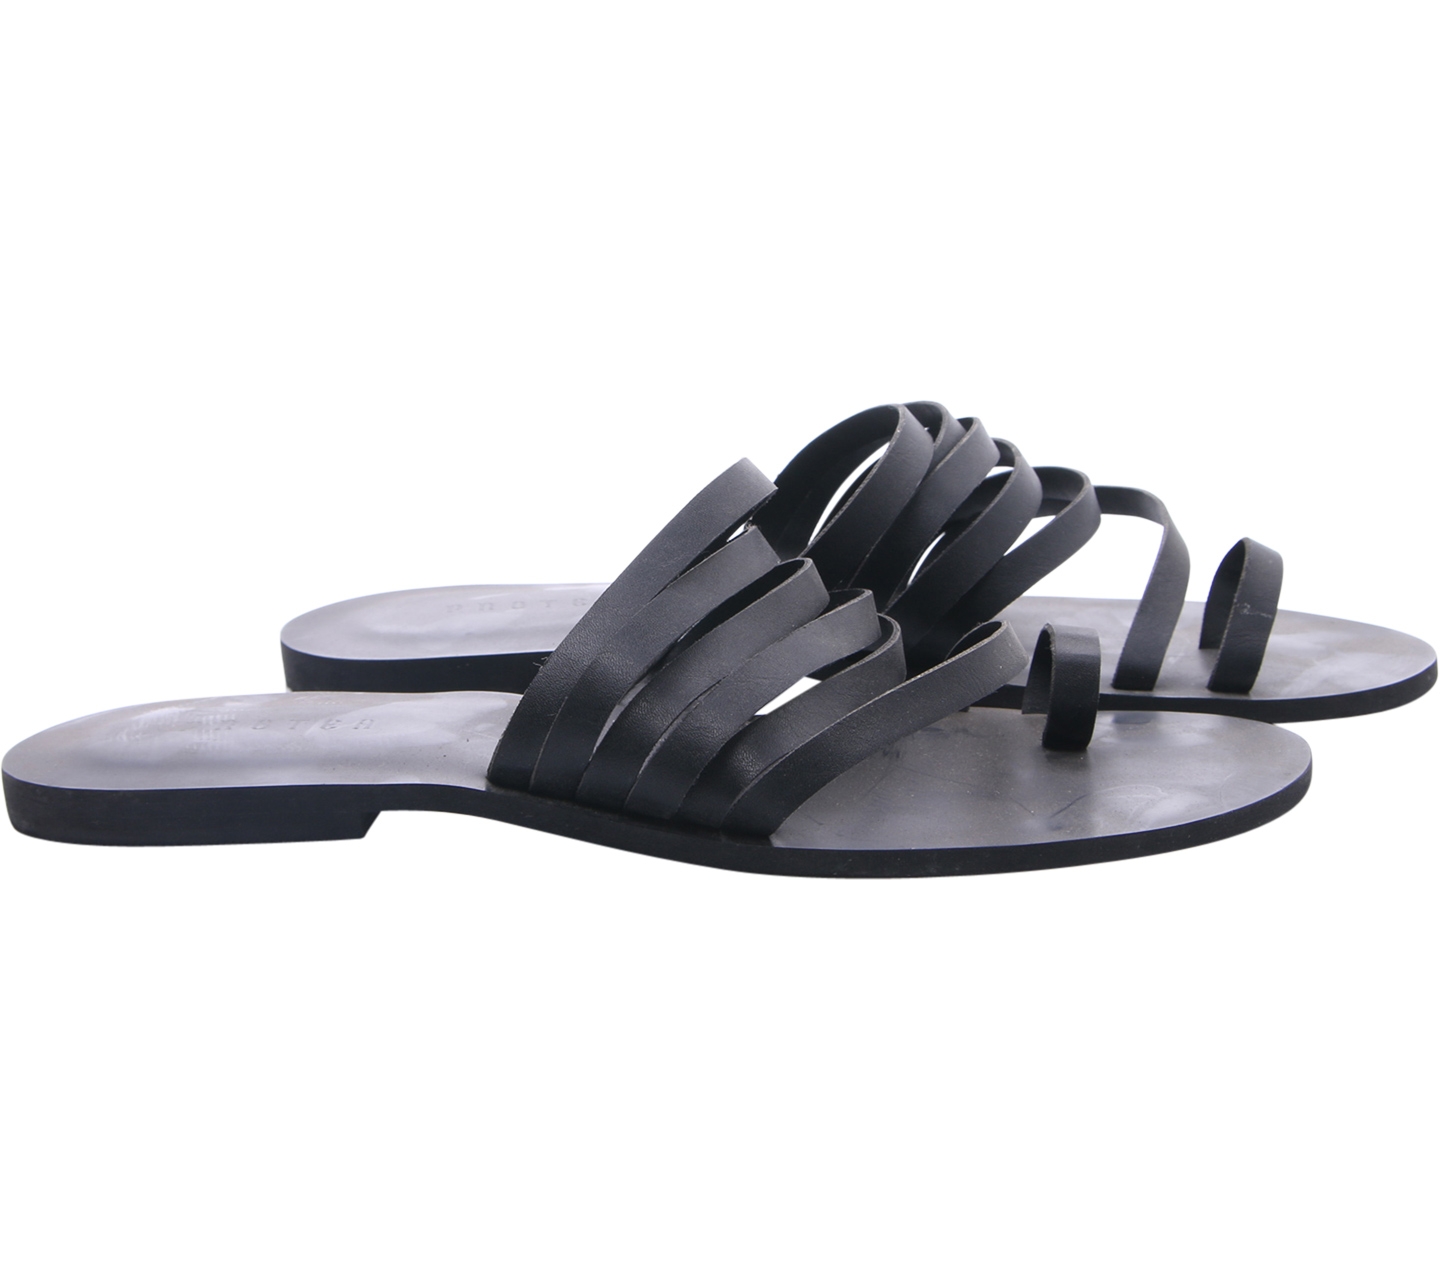 Protea Black Sandals